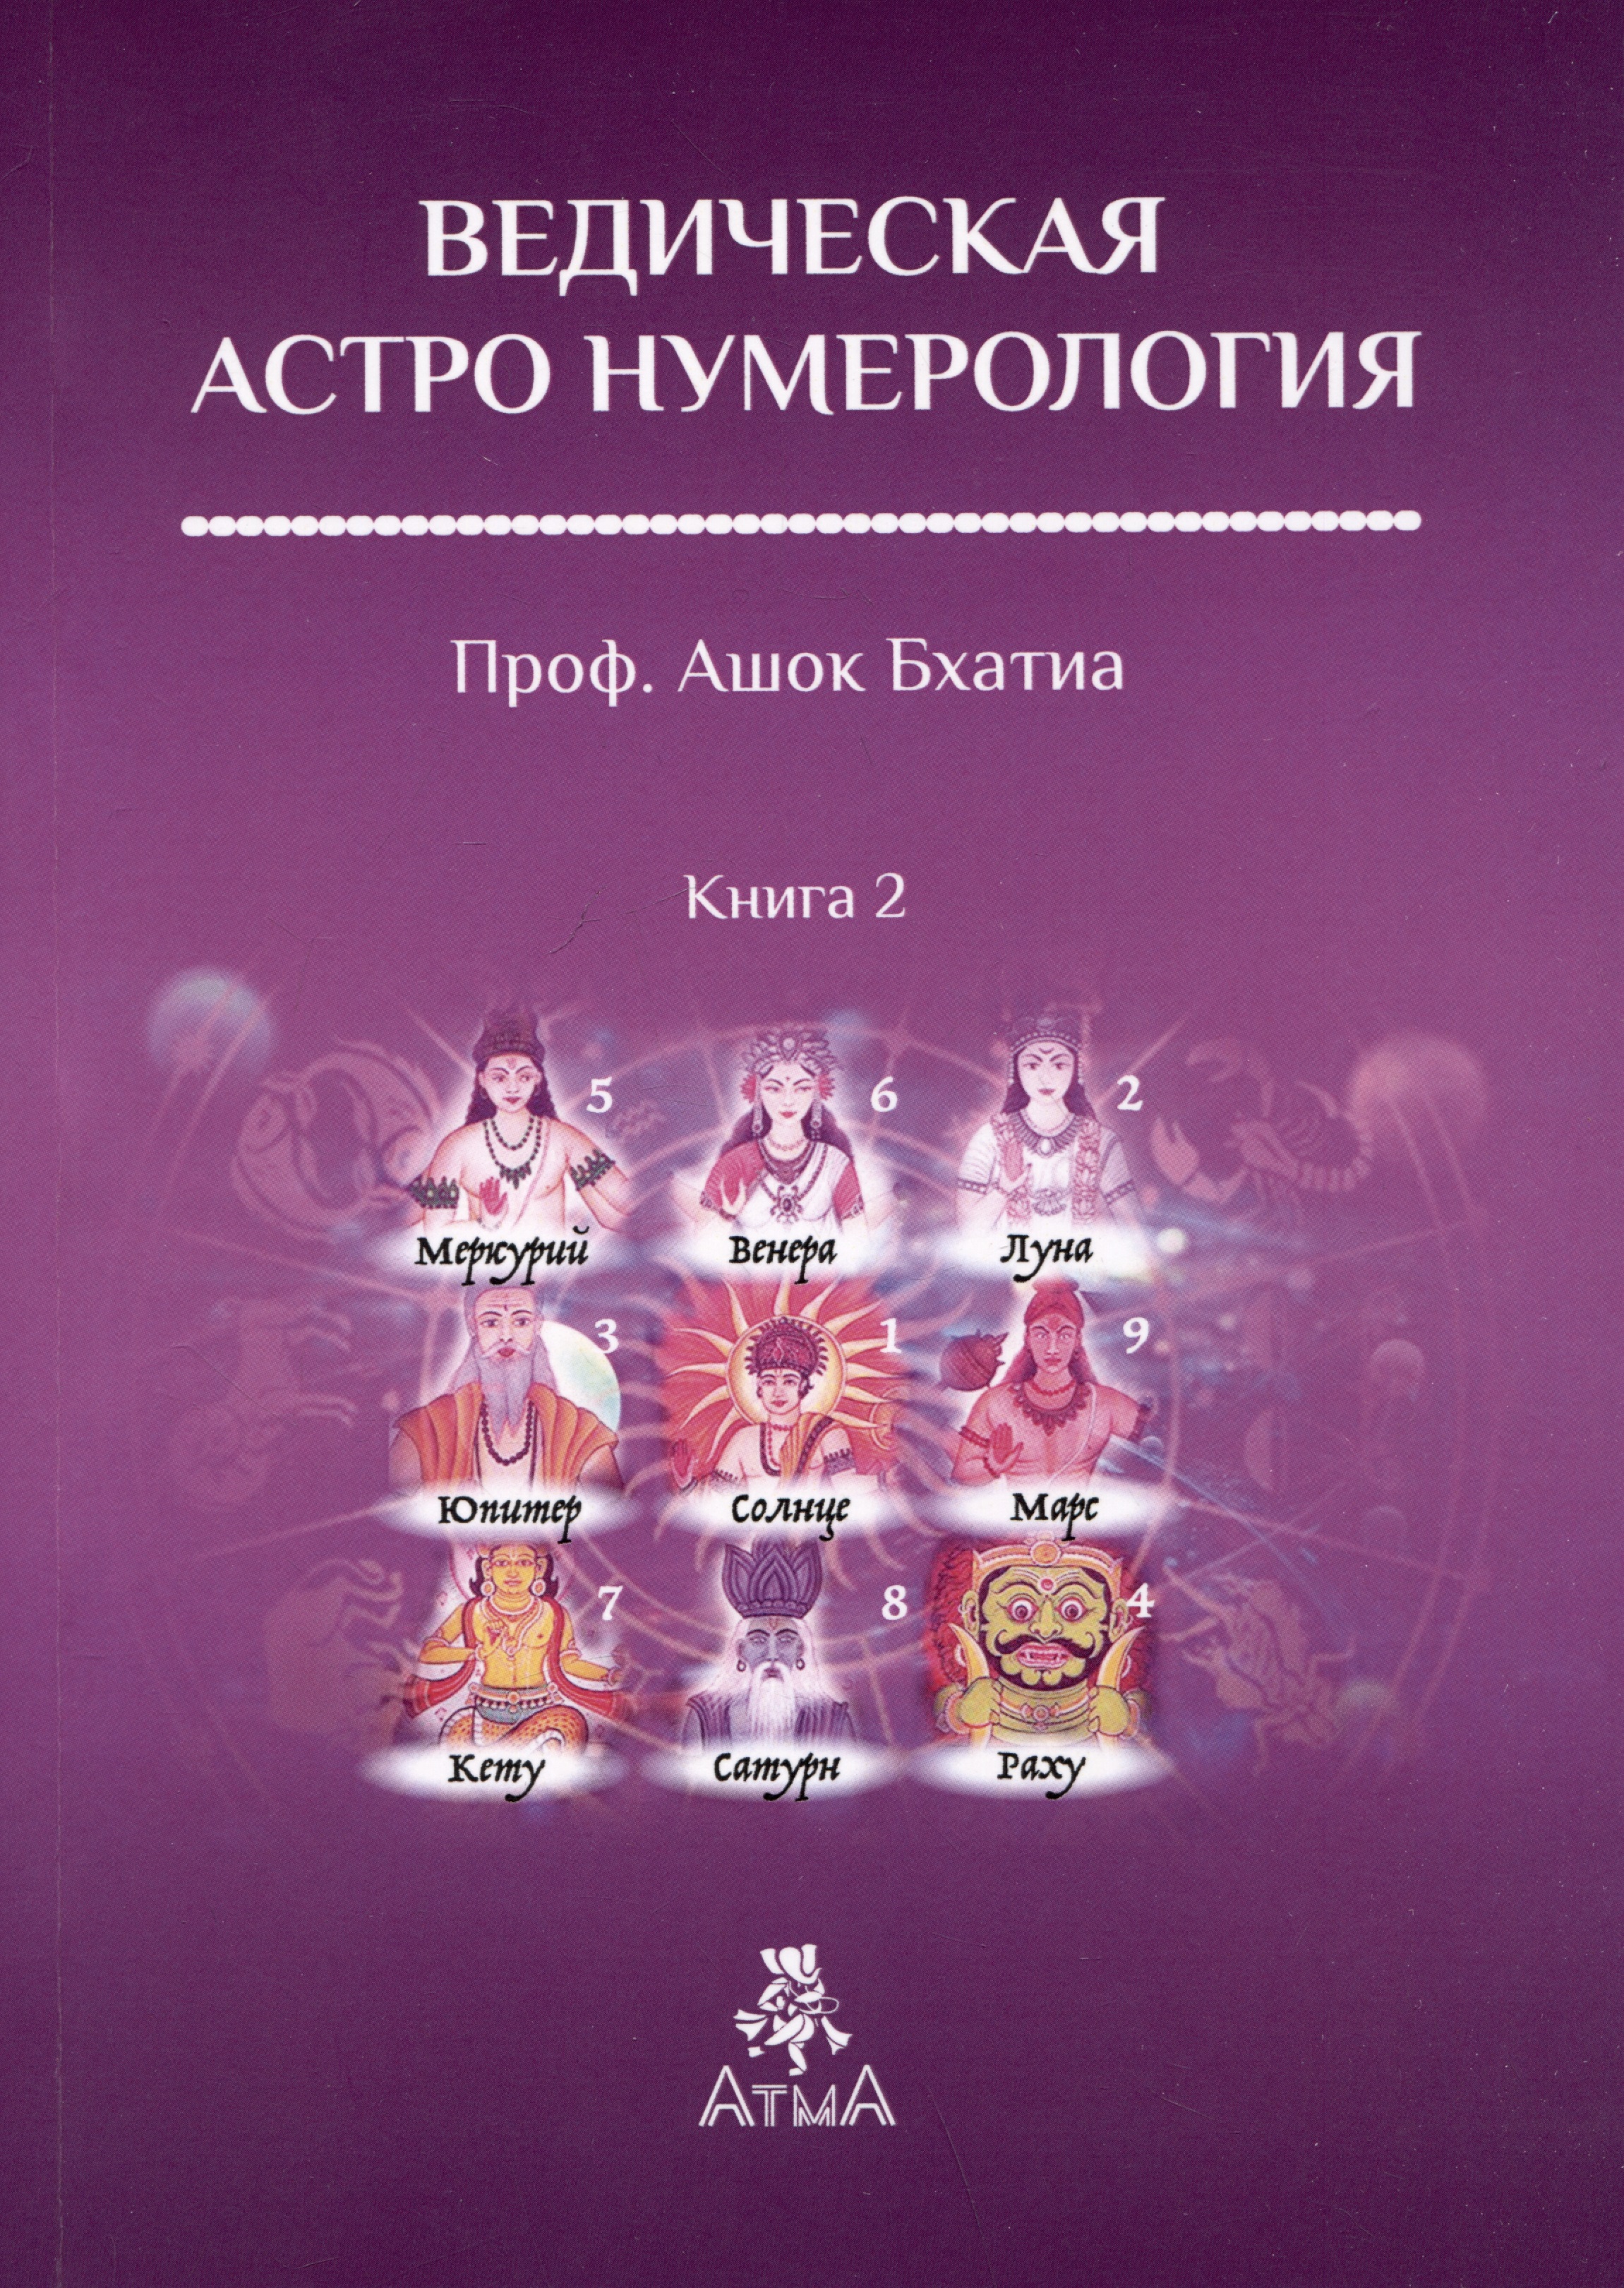 Бхатия Ашок Ведическая Астро Нумерология. Книга 2